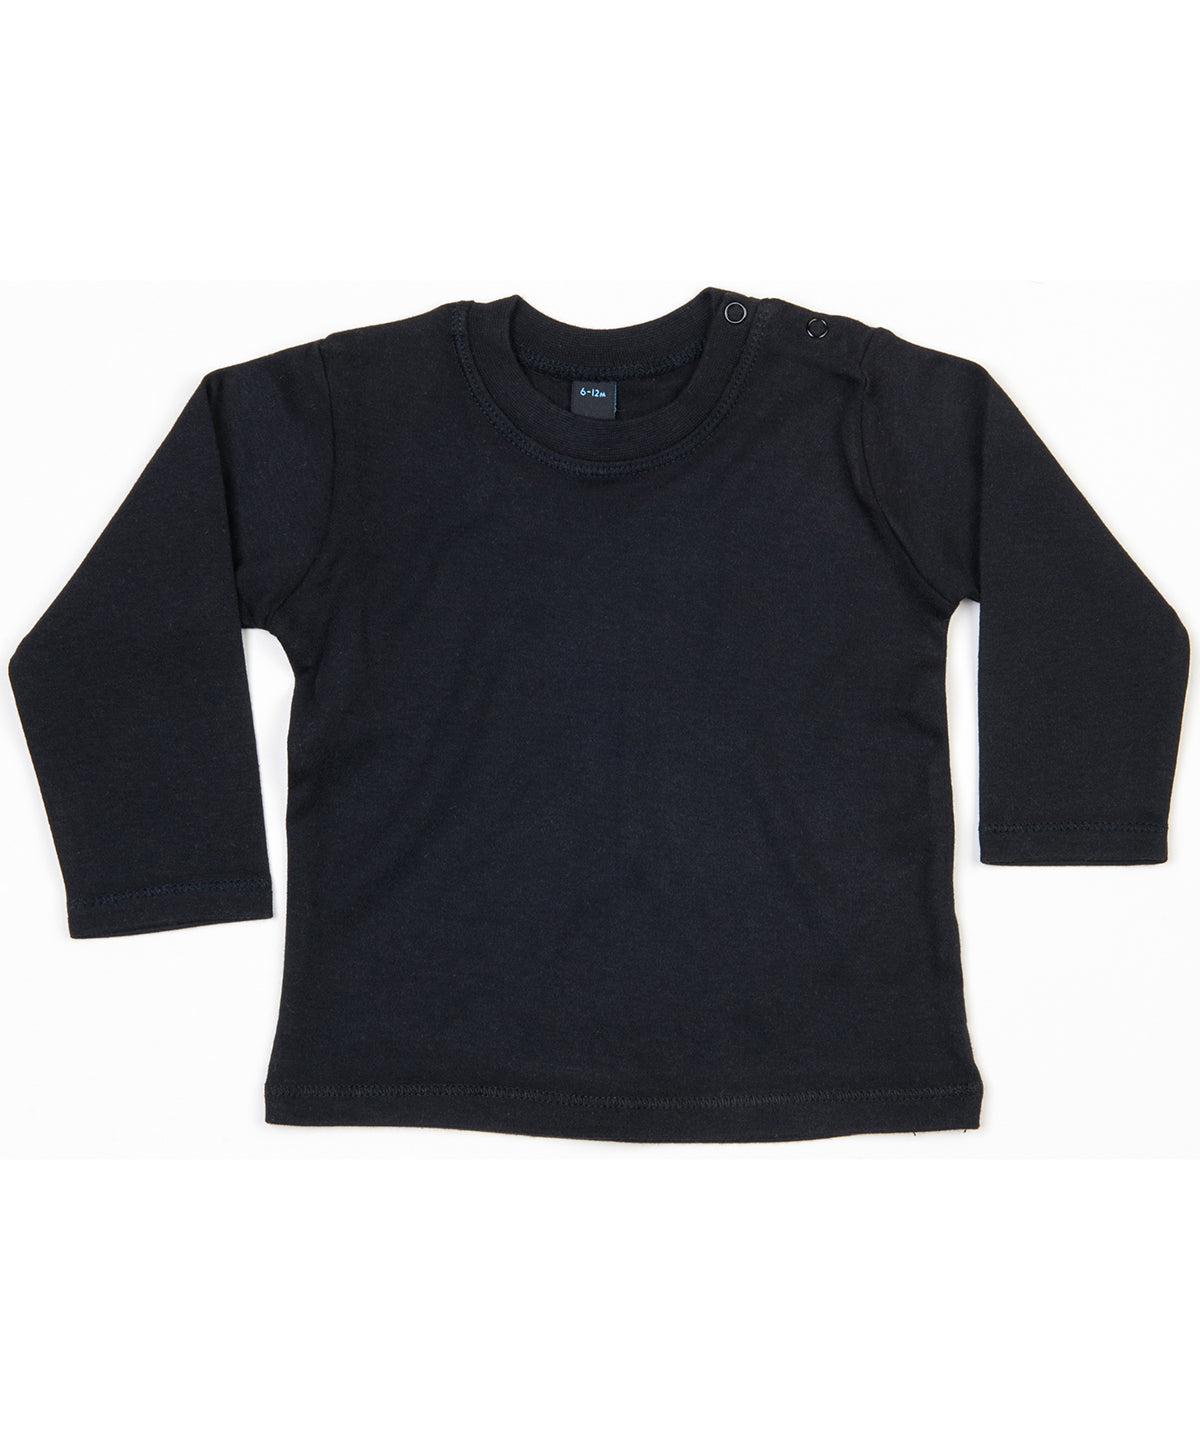 Personalised T-Shirts - Black Babybugz Baby long sleeve T